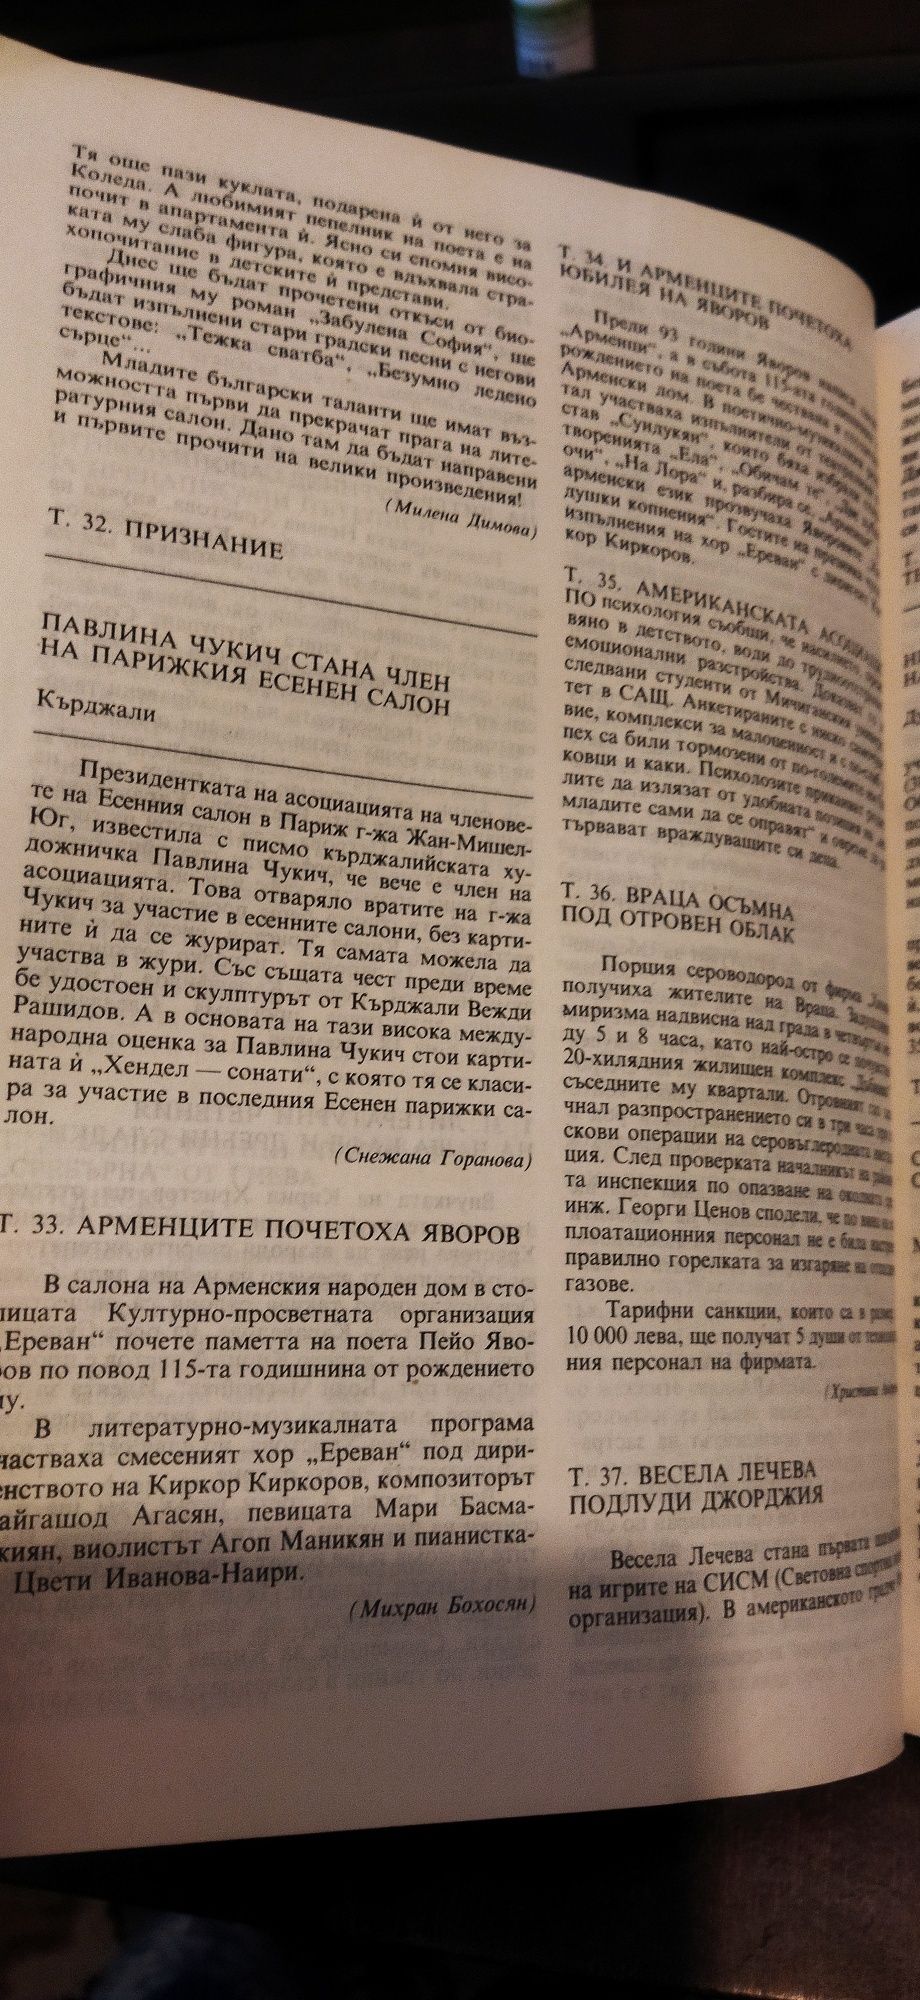 Български език 1994 г.